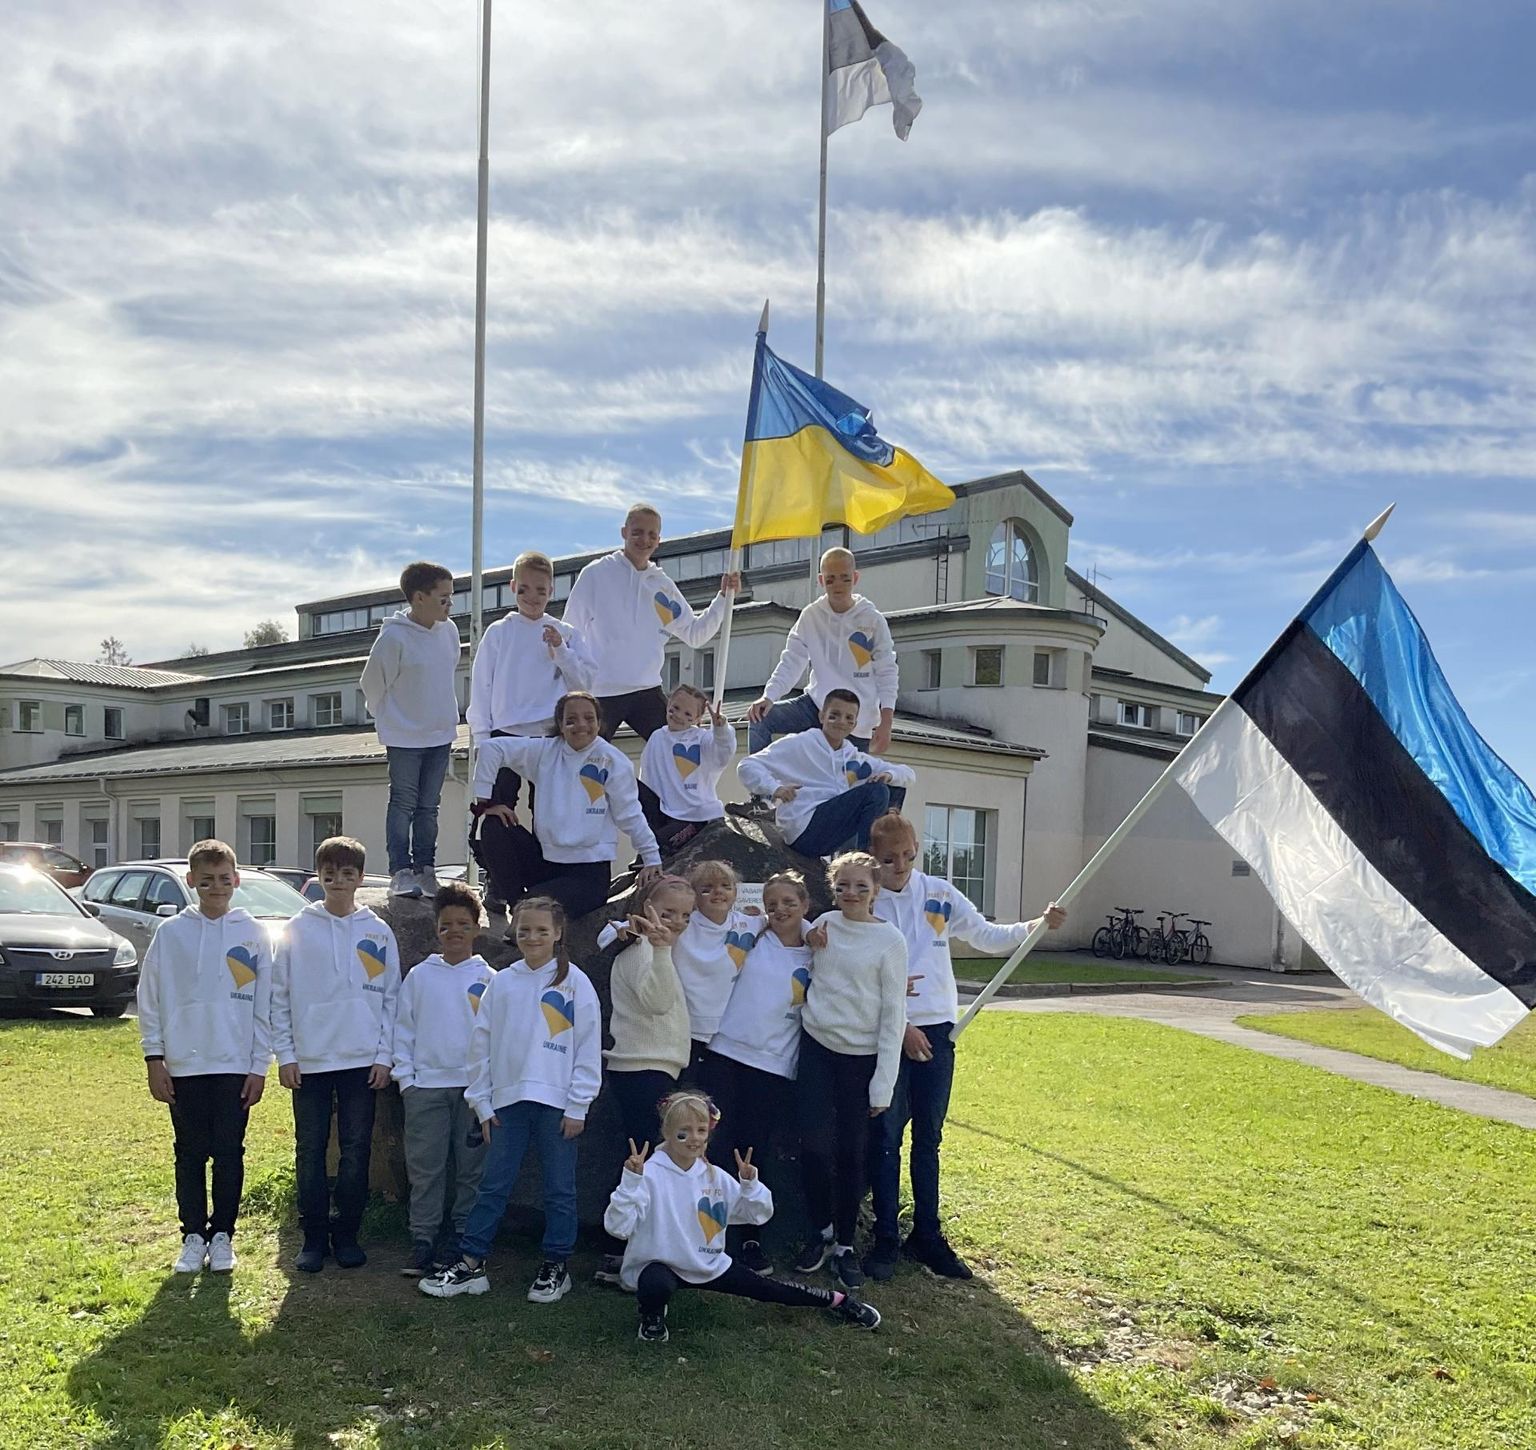 Päeva liigutavaim hetk oli Eesti ja Ukraina laste esinemine, mille olid lavastanud ukrainlannad, kelle koduks on Sürgavere spordihoone.